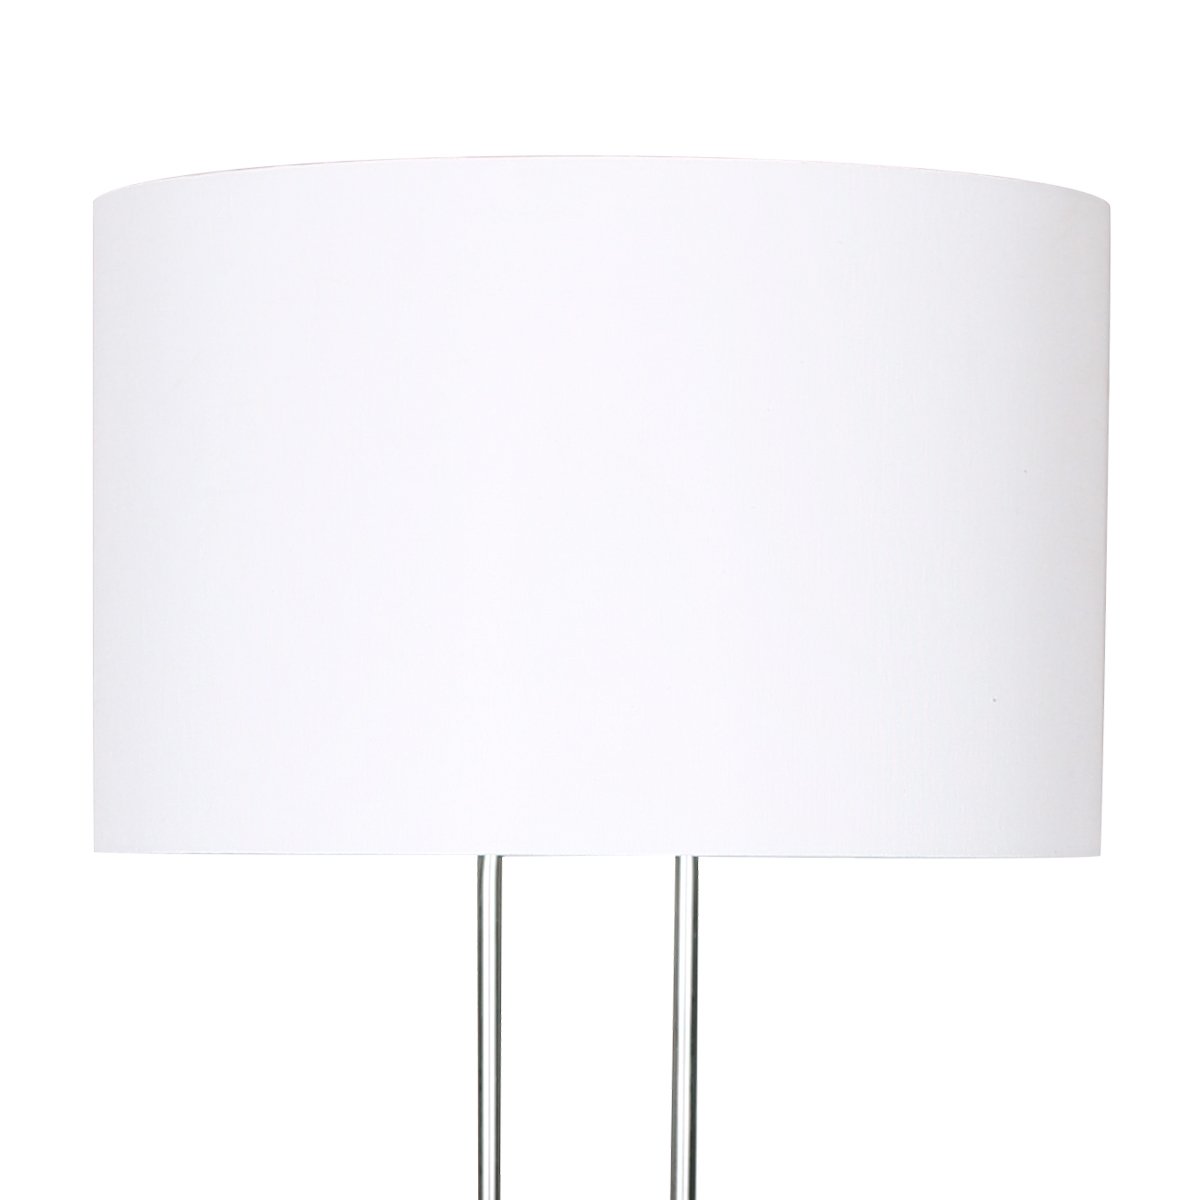 Brushed Nickel Height-Adjustable Metal Floor Lamp